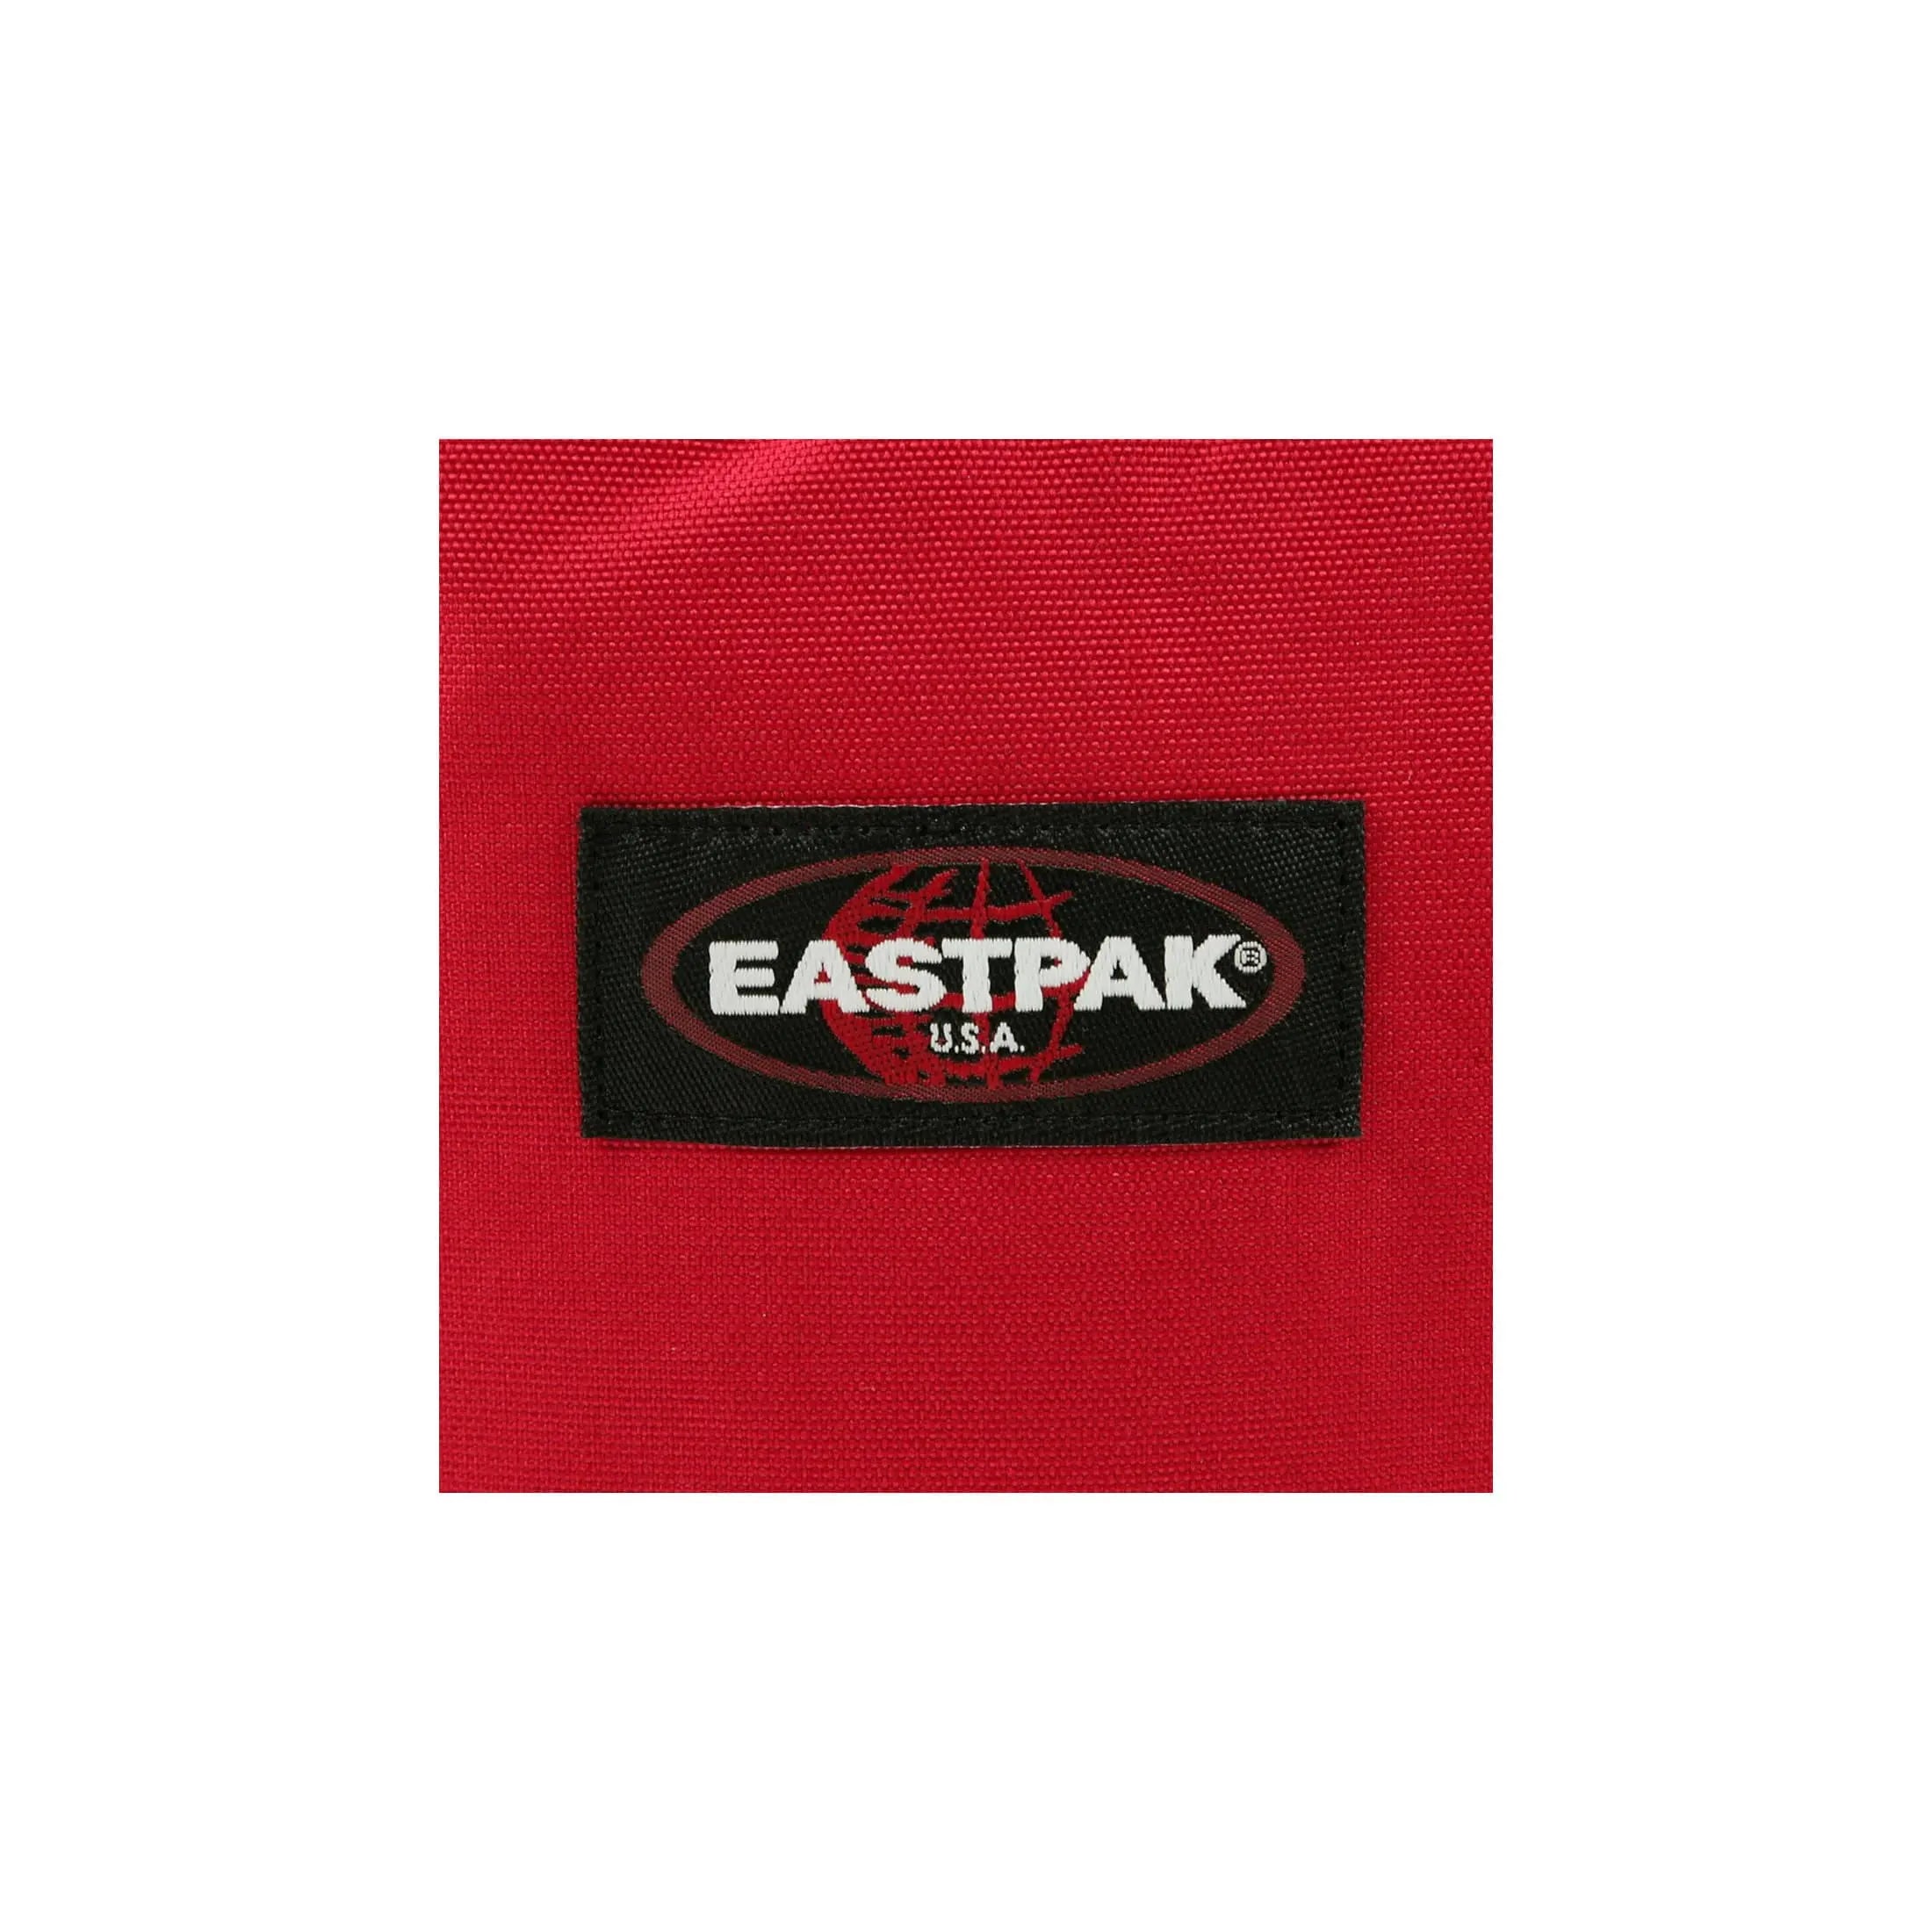 Eastpak Authentic Provider sac à dos pour ordinateur portable 44 cm - gris dimanche